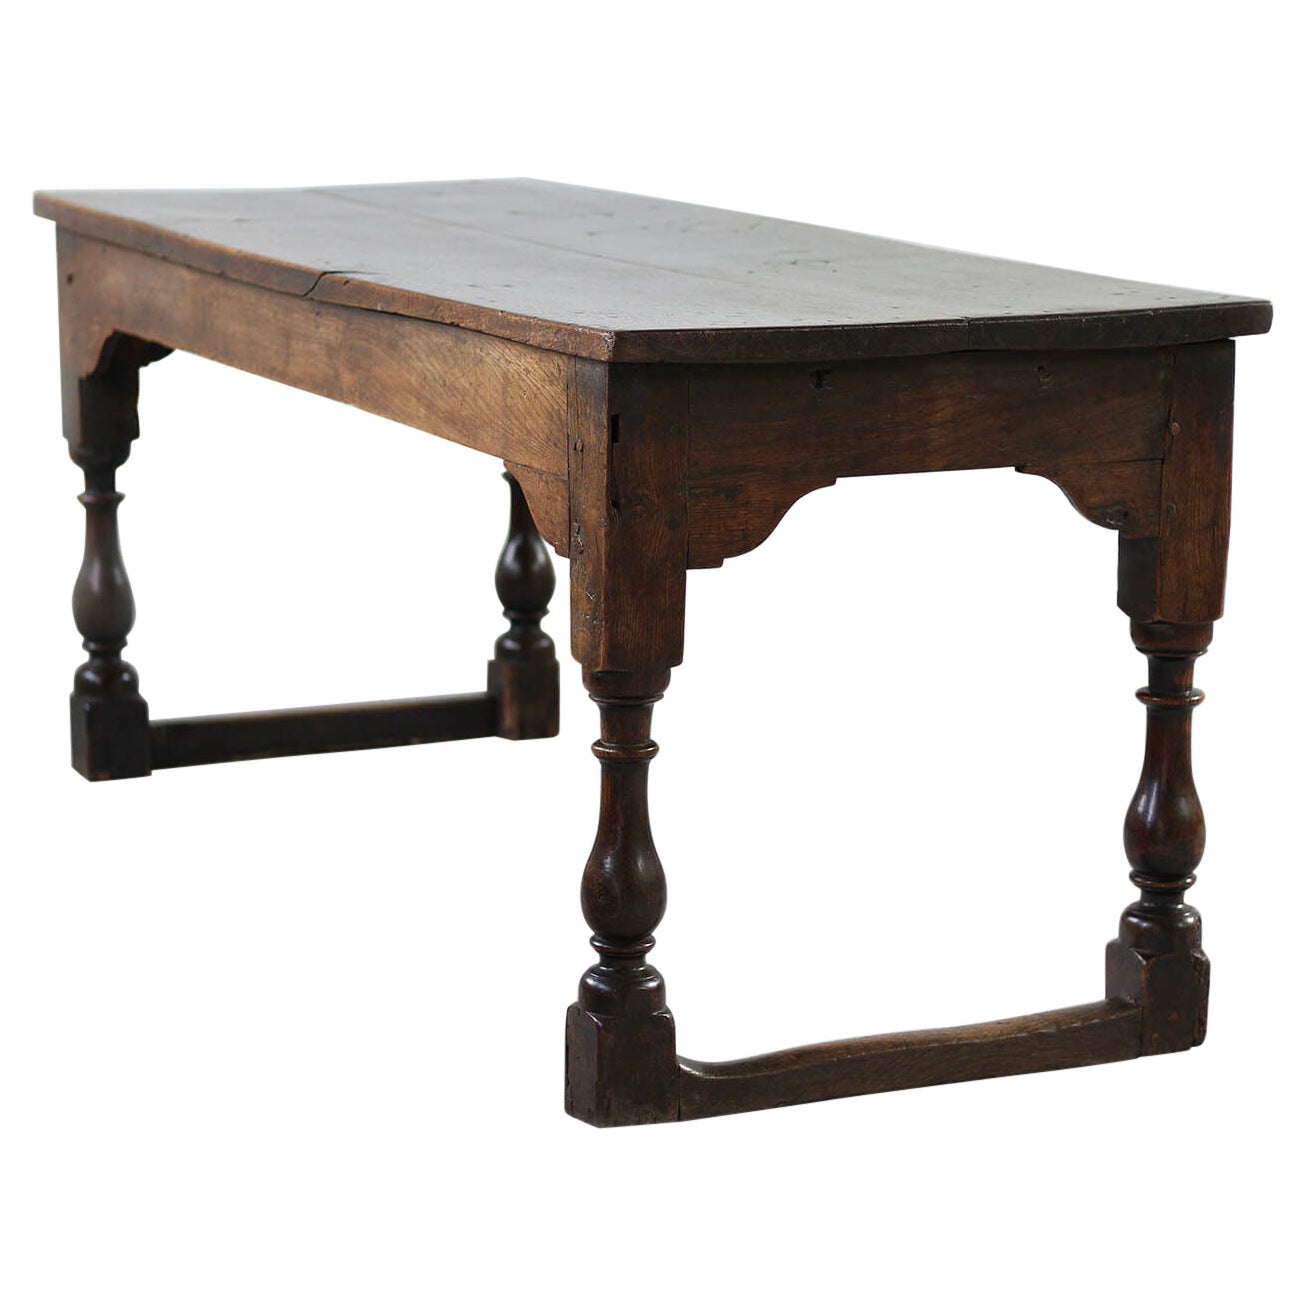 Table en chêne massif, circa 19e siècle, style rustique, table de préparation ou table à manger